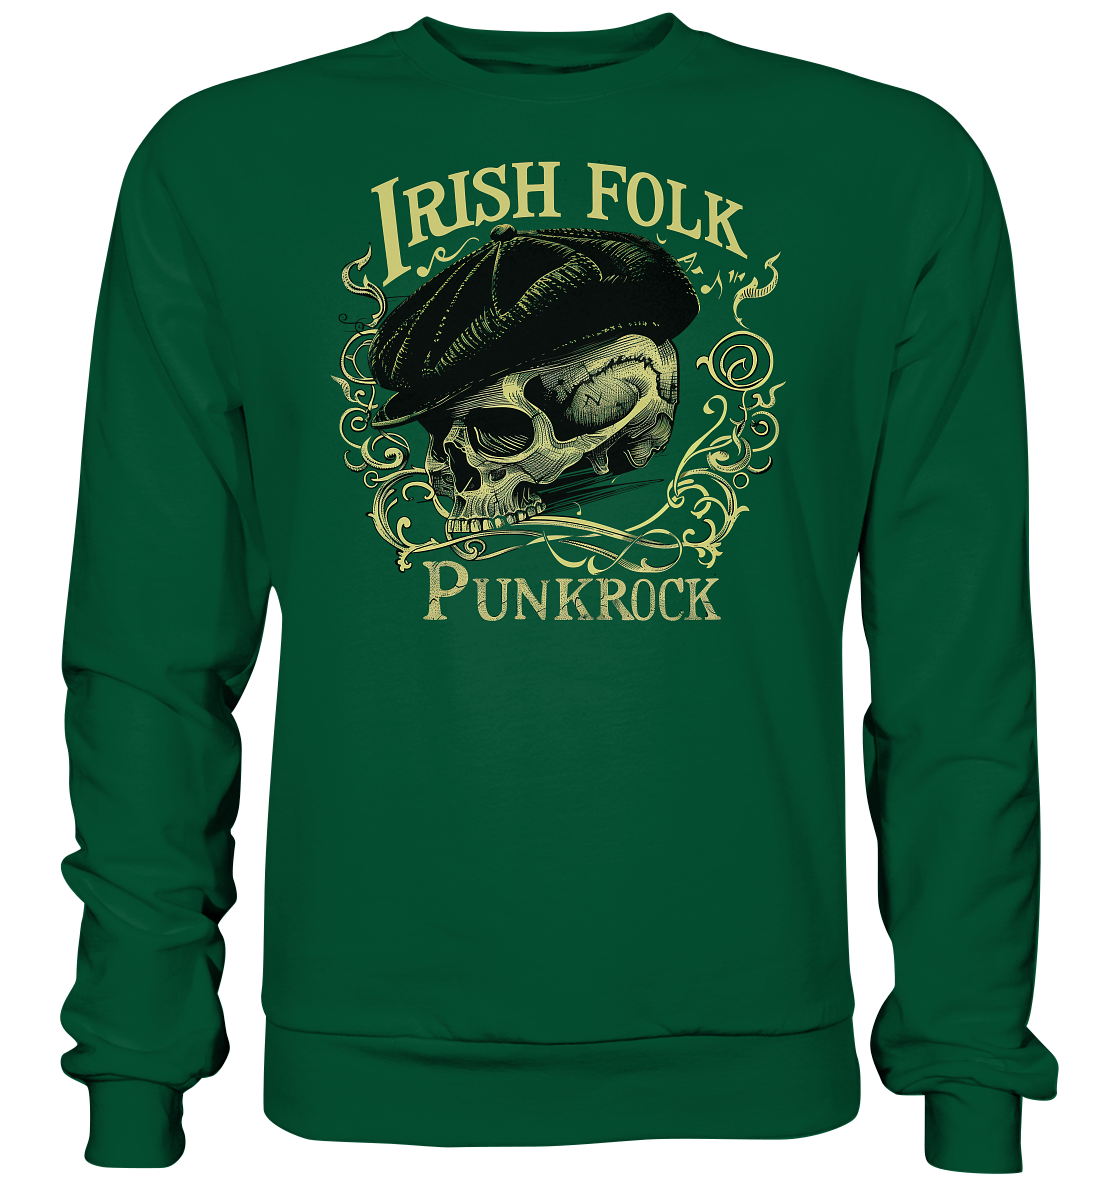 Irish Folk Punkrock "Flatcap-Skull I" - Basic Sweatshirt